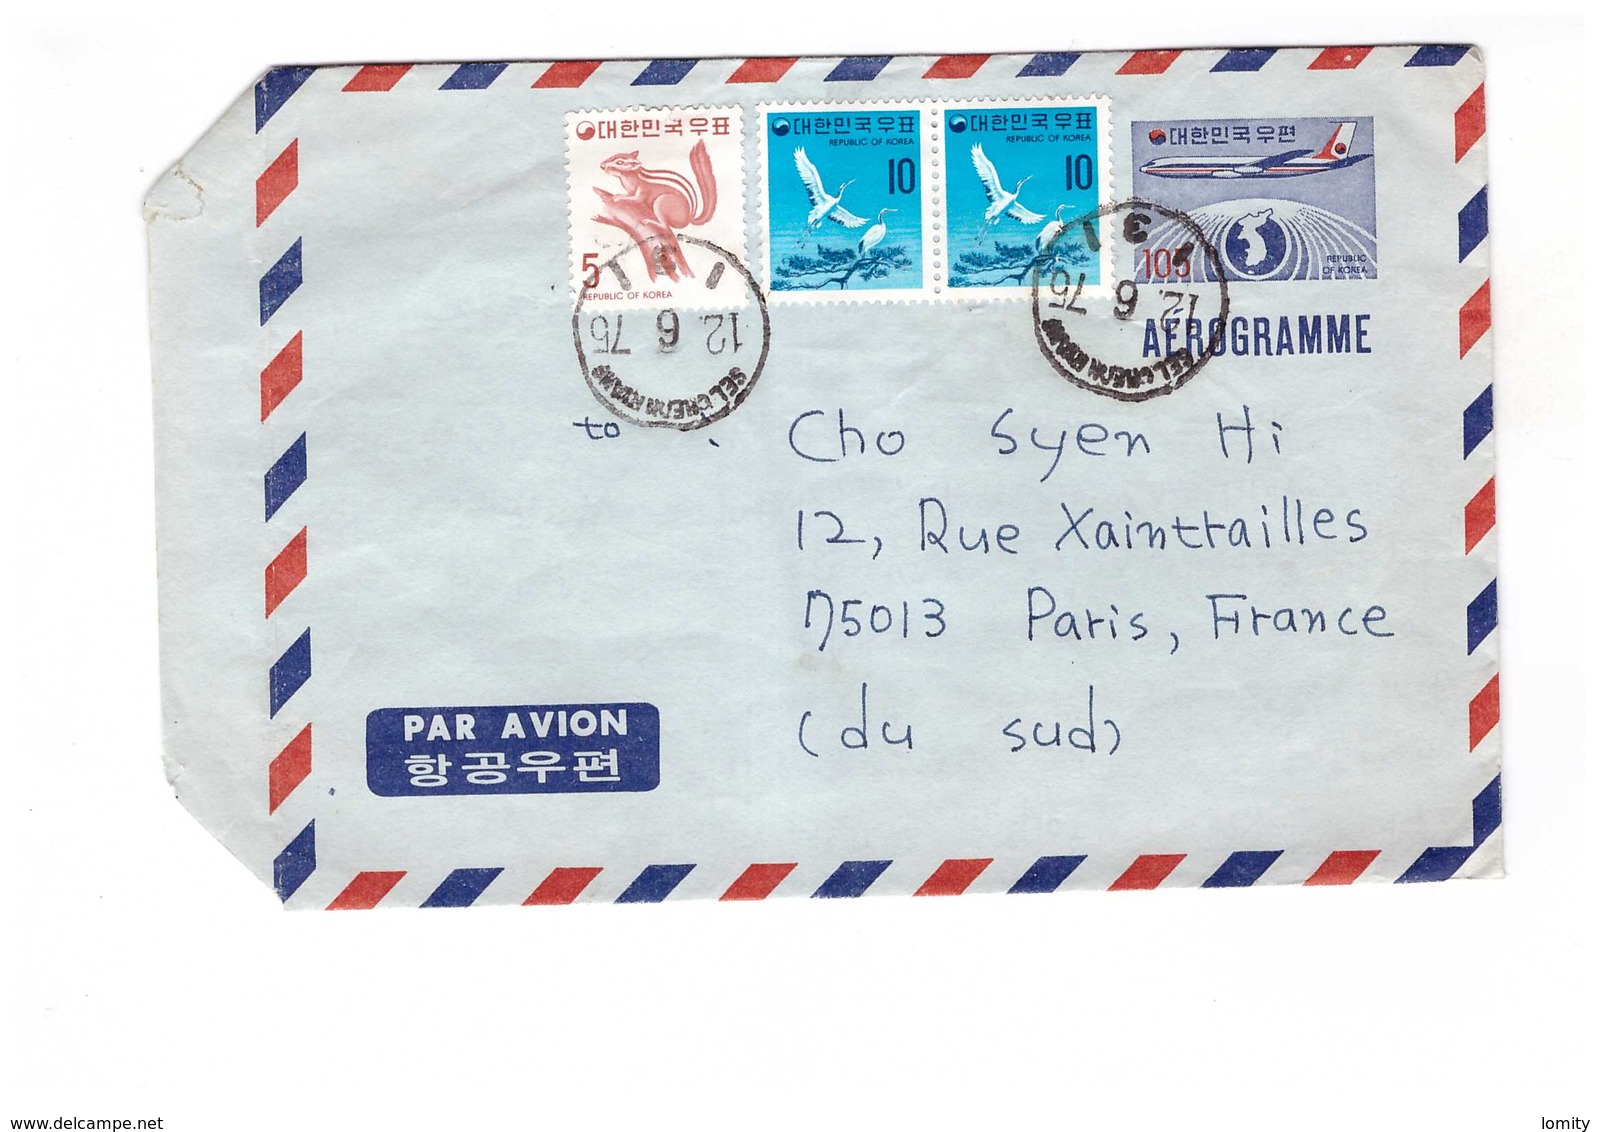 Lettre Aerogramme 1975 Republic Korea Entier Postal 105 + Timbre , Pour Paris France Par Avion Republique Corée Du Sud - Corée Du Sud